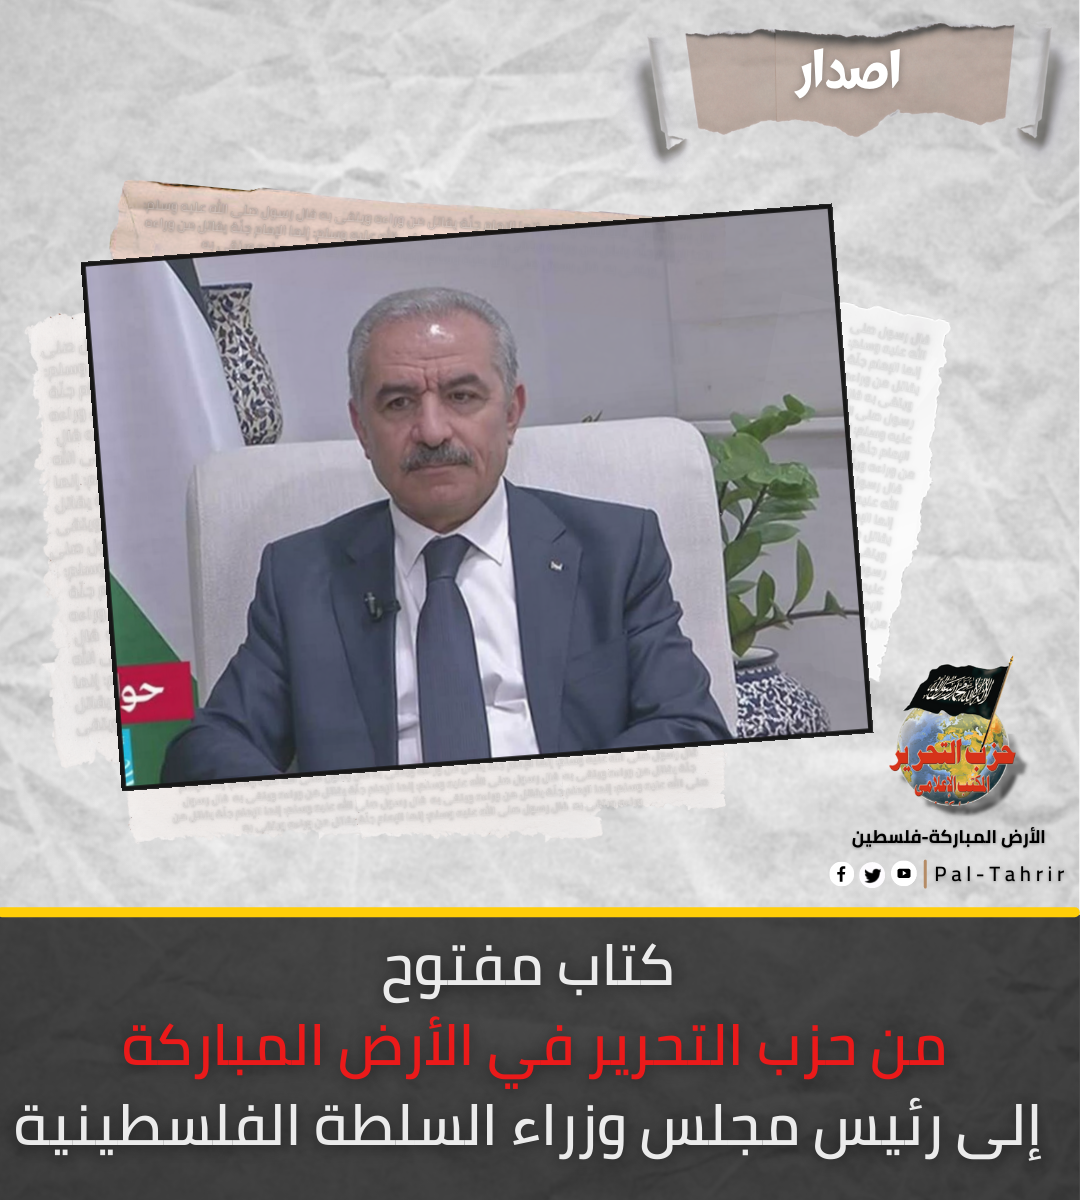 كتاب مفتوح من حزب التحرير في الأرض المباركة إلى رئيس مجلس وزراء السلطة الفلسطينية.